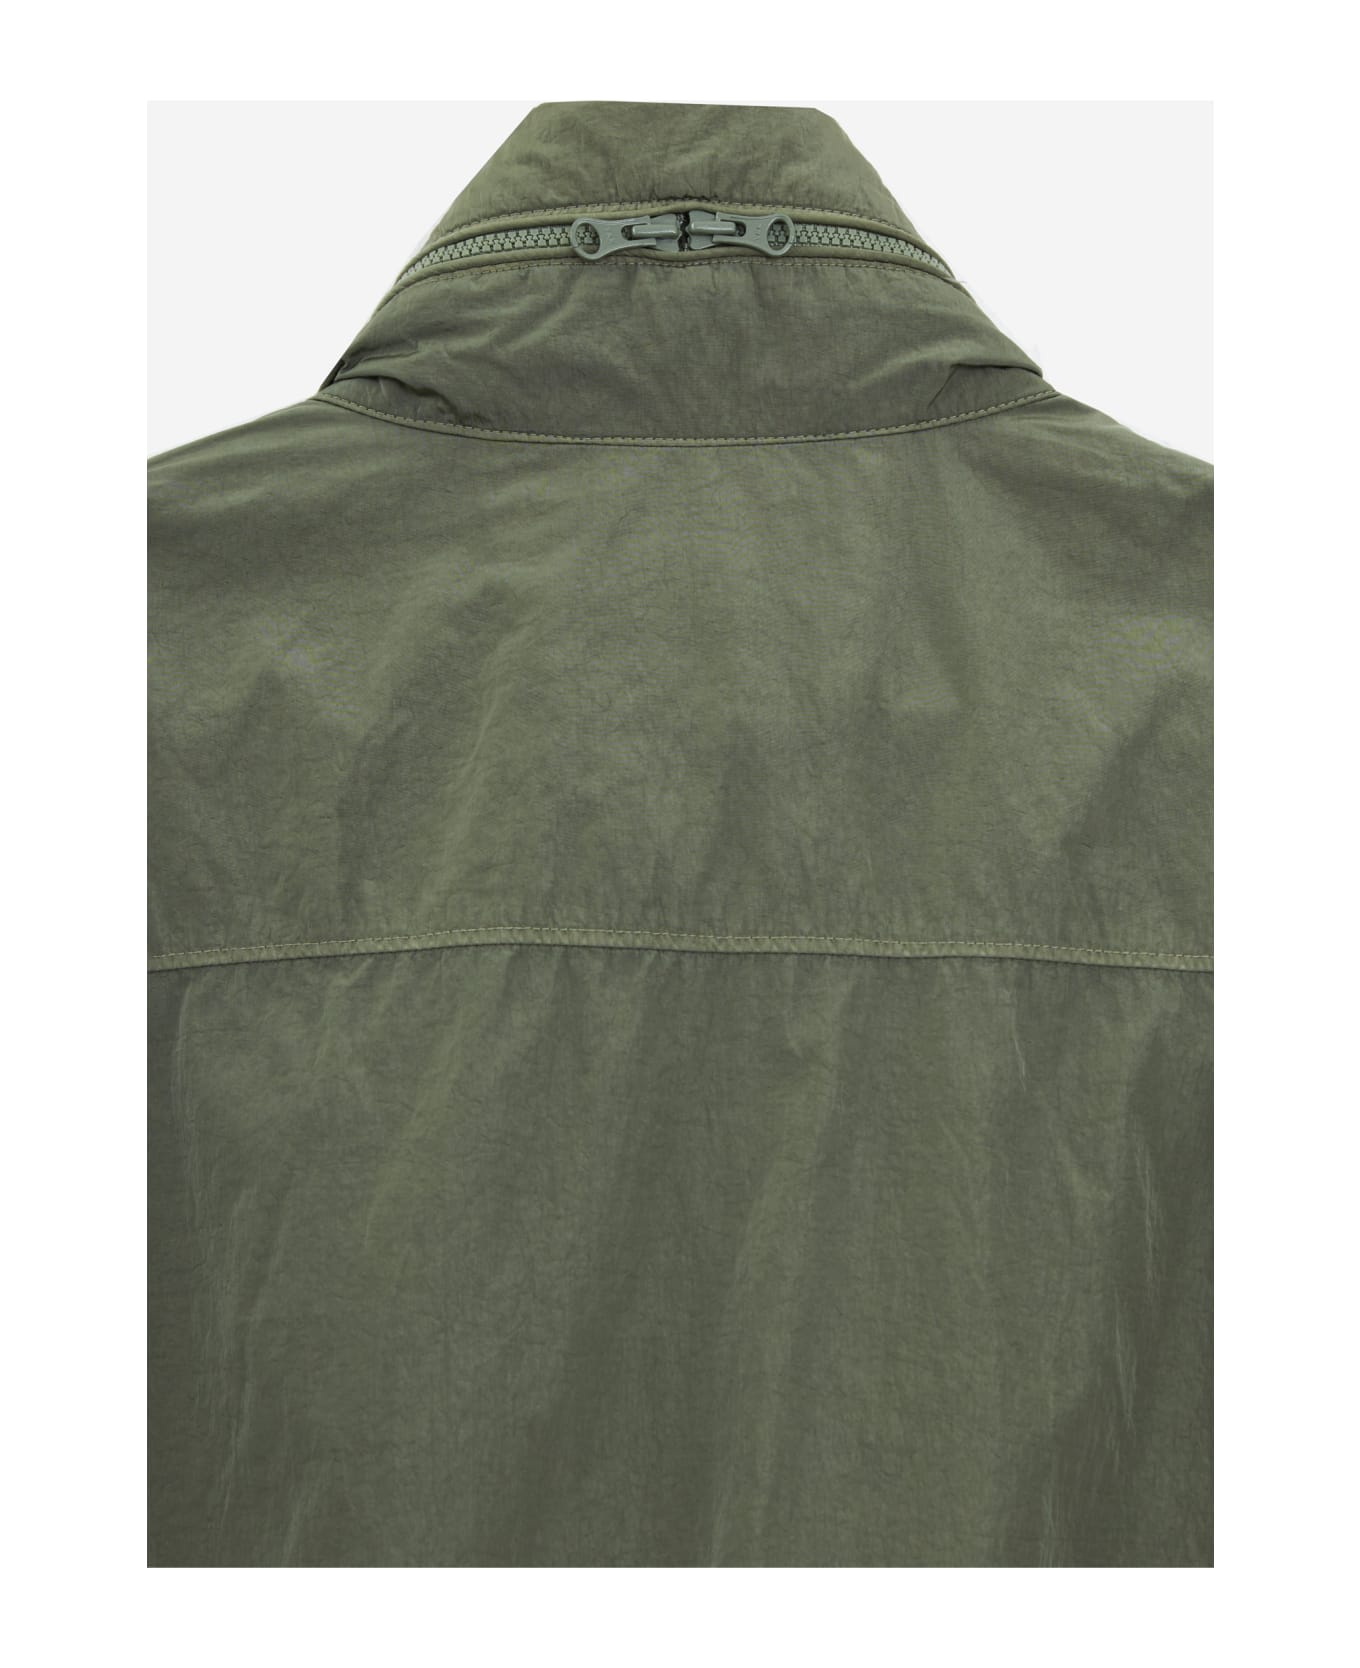 C.P. Company Jacket - green ブレザー